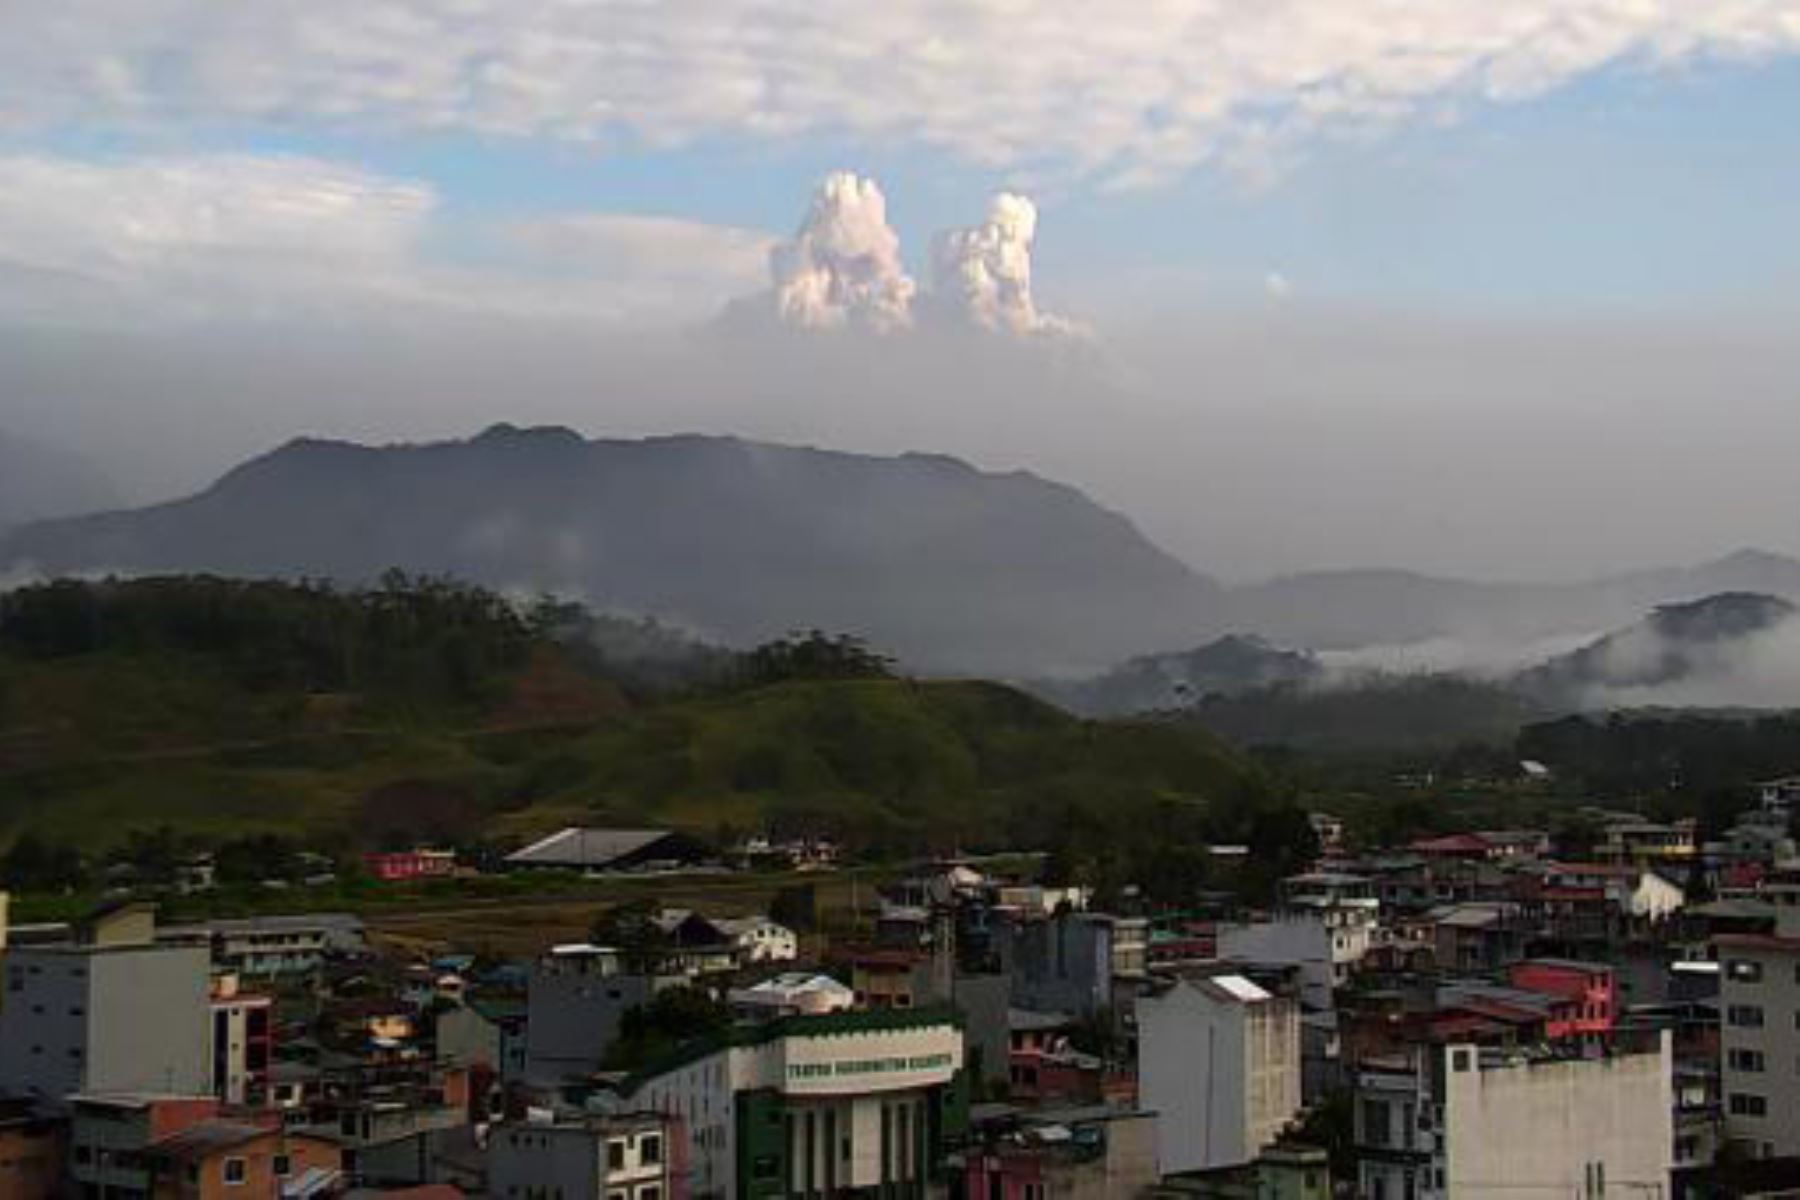 El comportamiento del volcán de 5,230 metros de altura, situado a 195 km al sur de Quito, afectó al puerto de Guayaquil, el principal foco de la pandemia de coronavirus en Ecuador con casi 10,000 contagios. ANDINA/Difusión